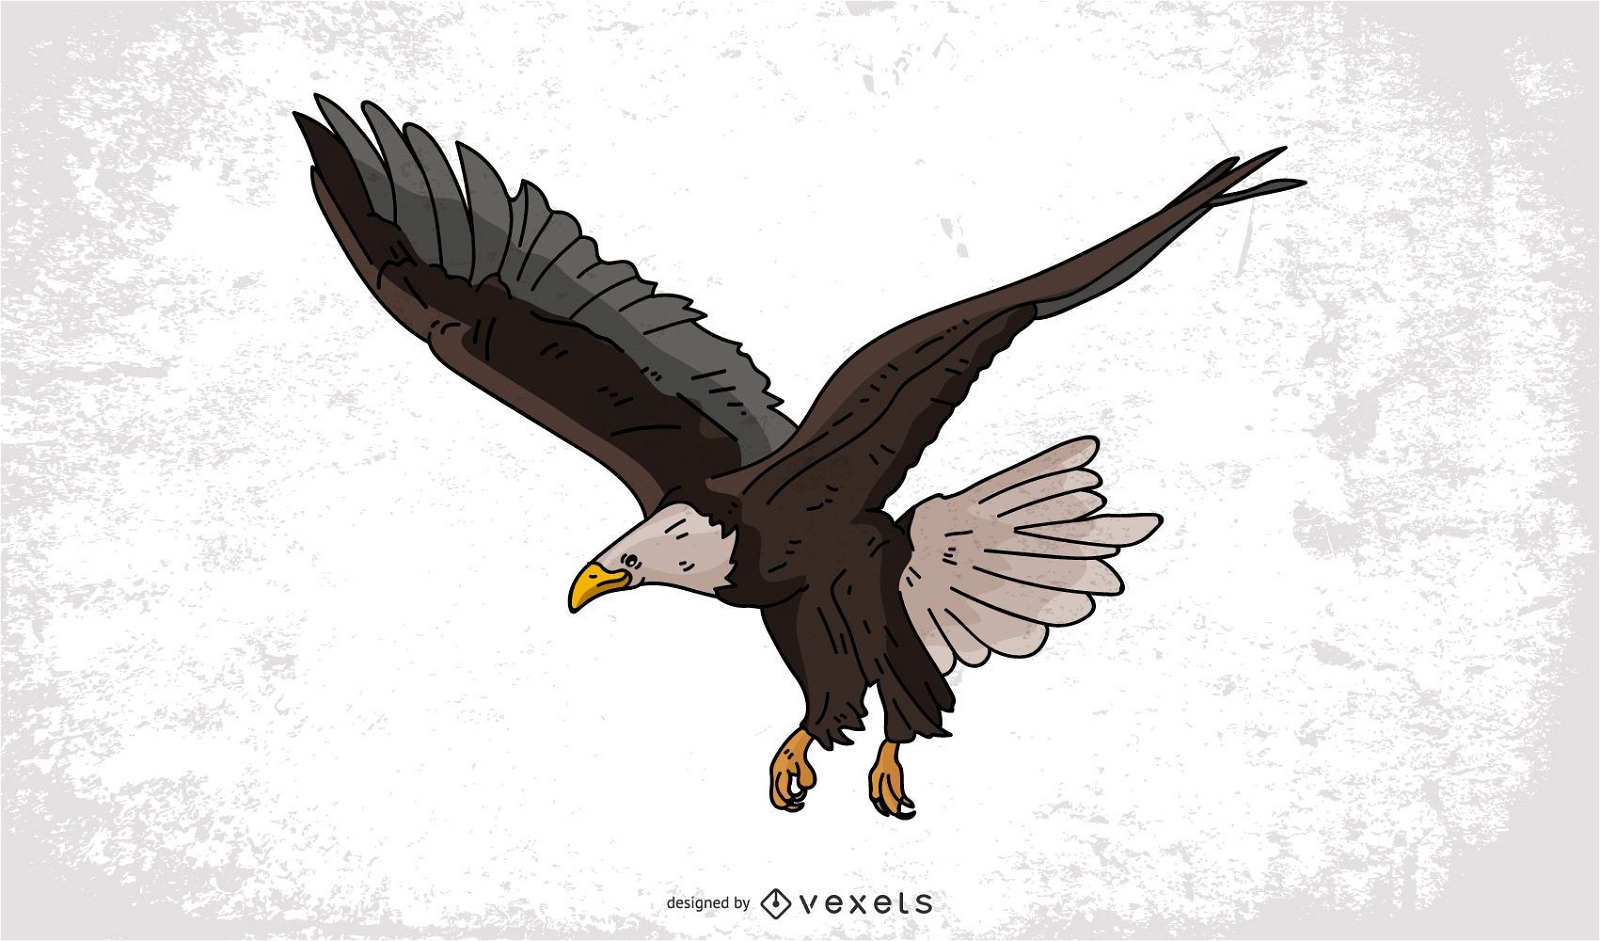 cartoon eagle drawing